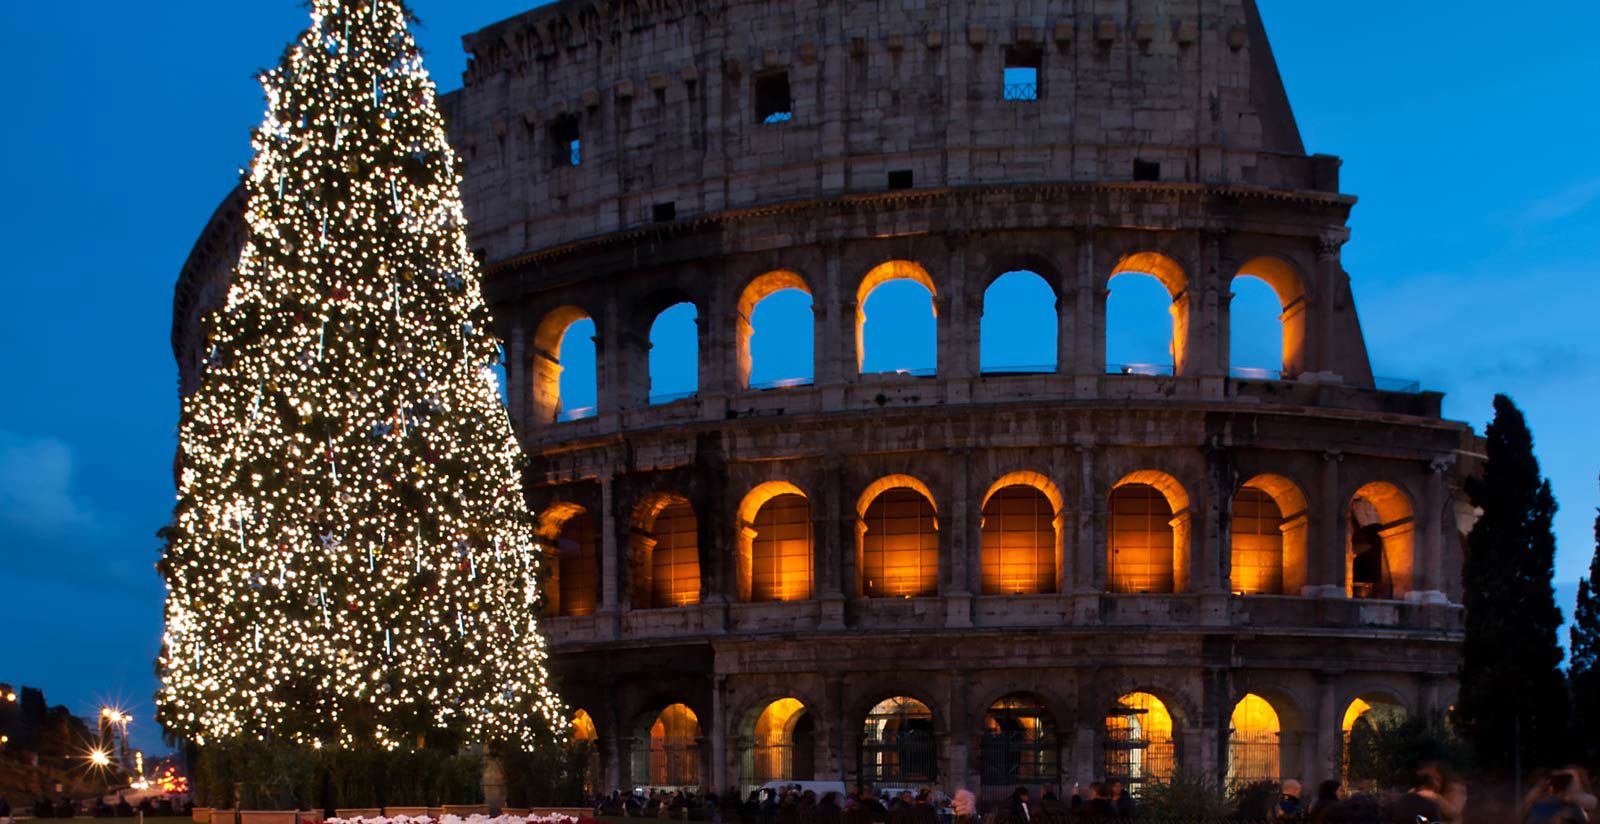 FH55 Hotels - Hôtels à Rome pour le réveillon du Nouvel An : offres hôtels 4 étoiles 1